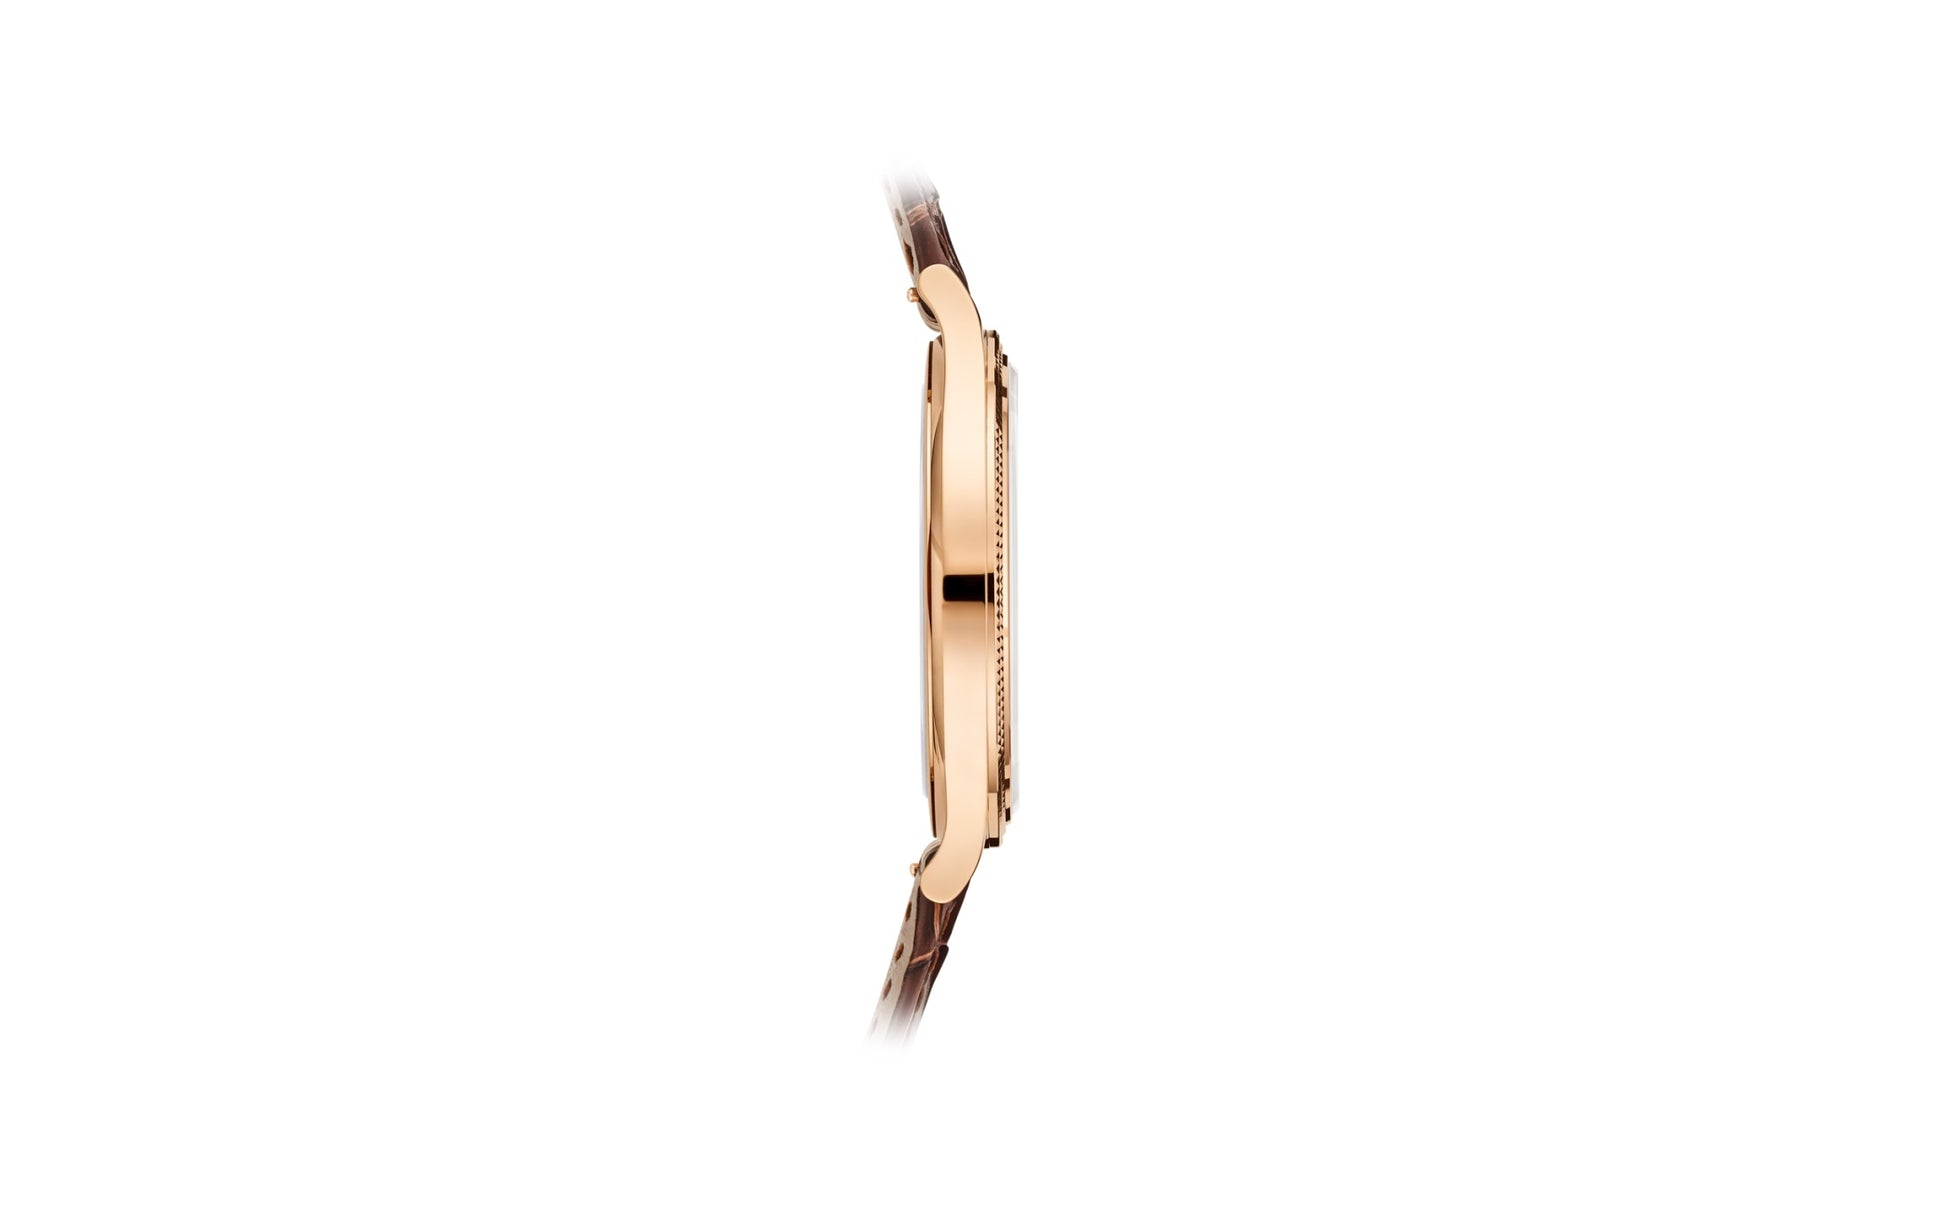 Patek Philippe Calatrava, 18k Rose Gold, 39mm, Ref# 6119R-001, Left